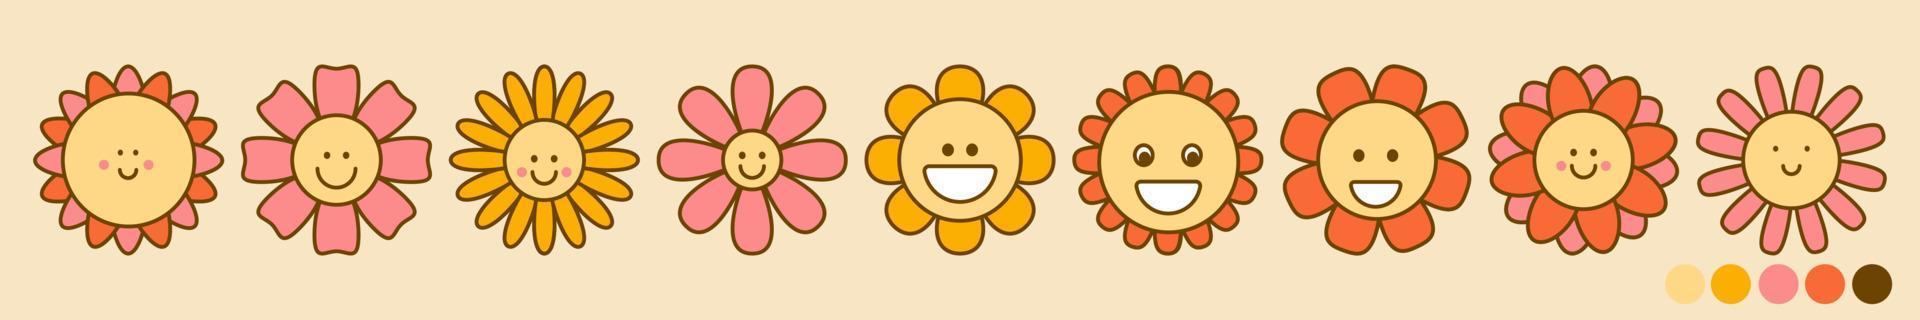 conjunto vectorial de flores retro con sonrisas y ojos en estilo maravilloso vector